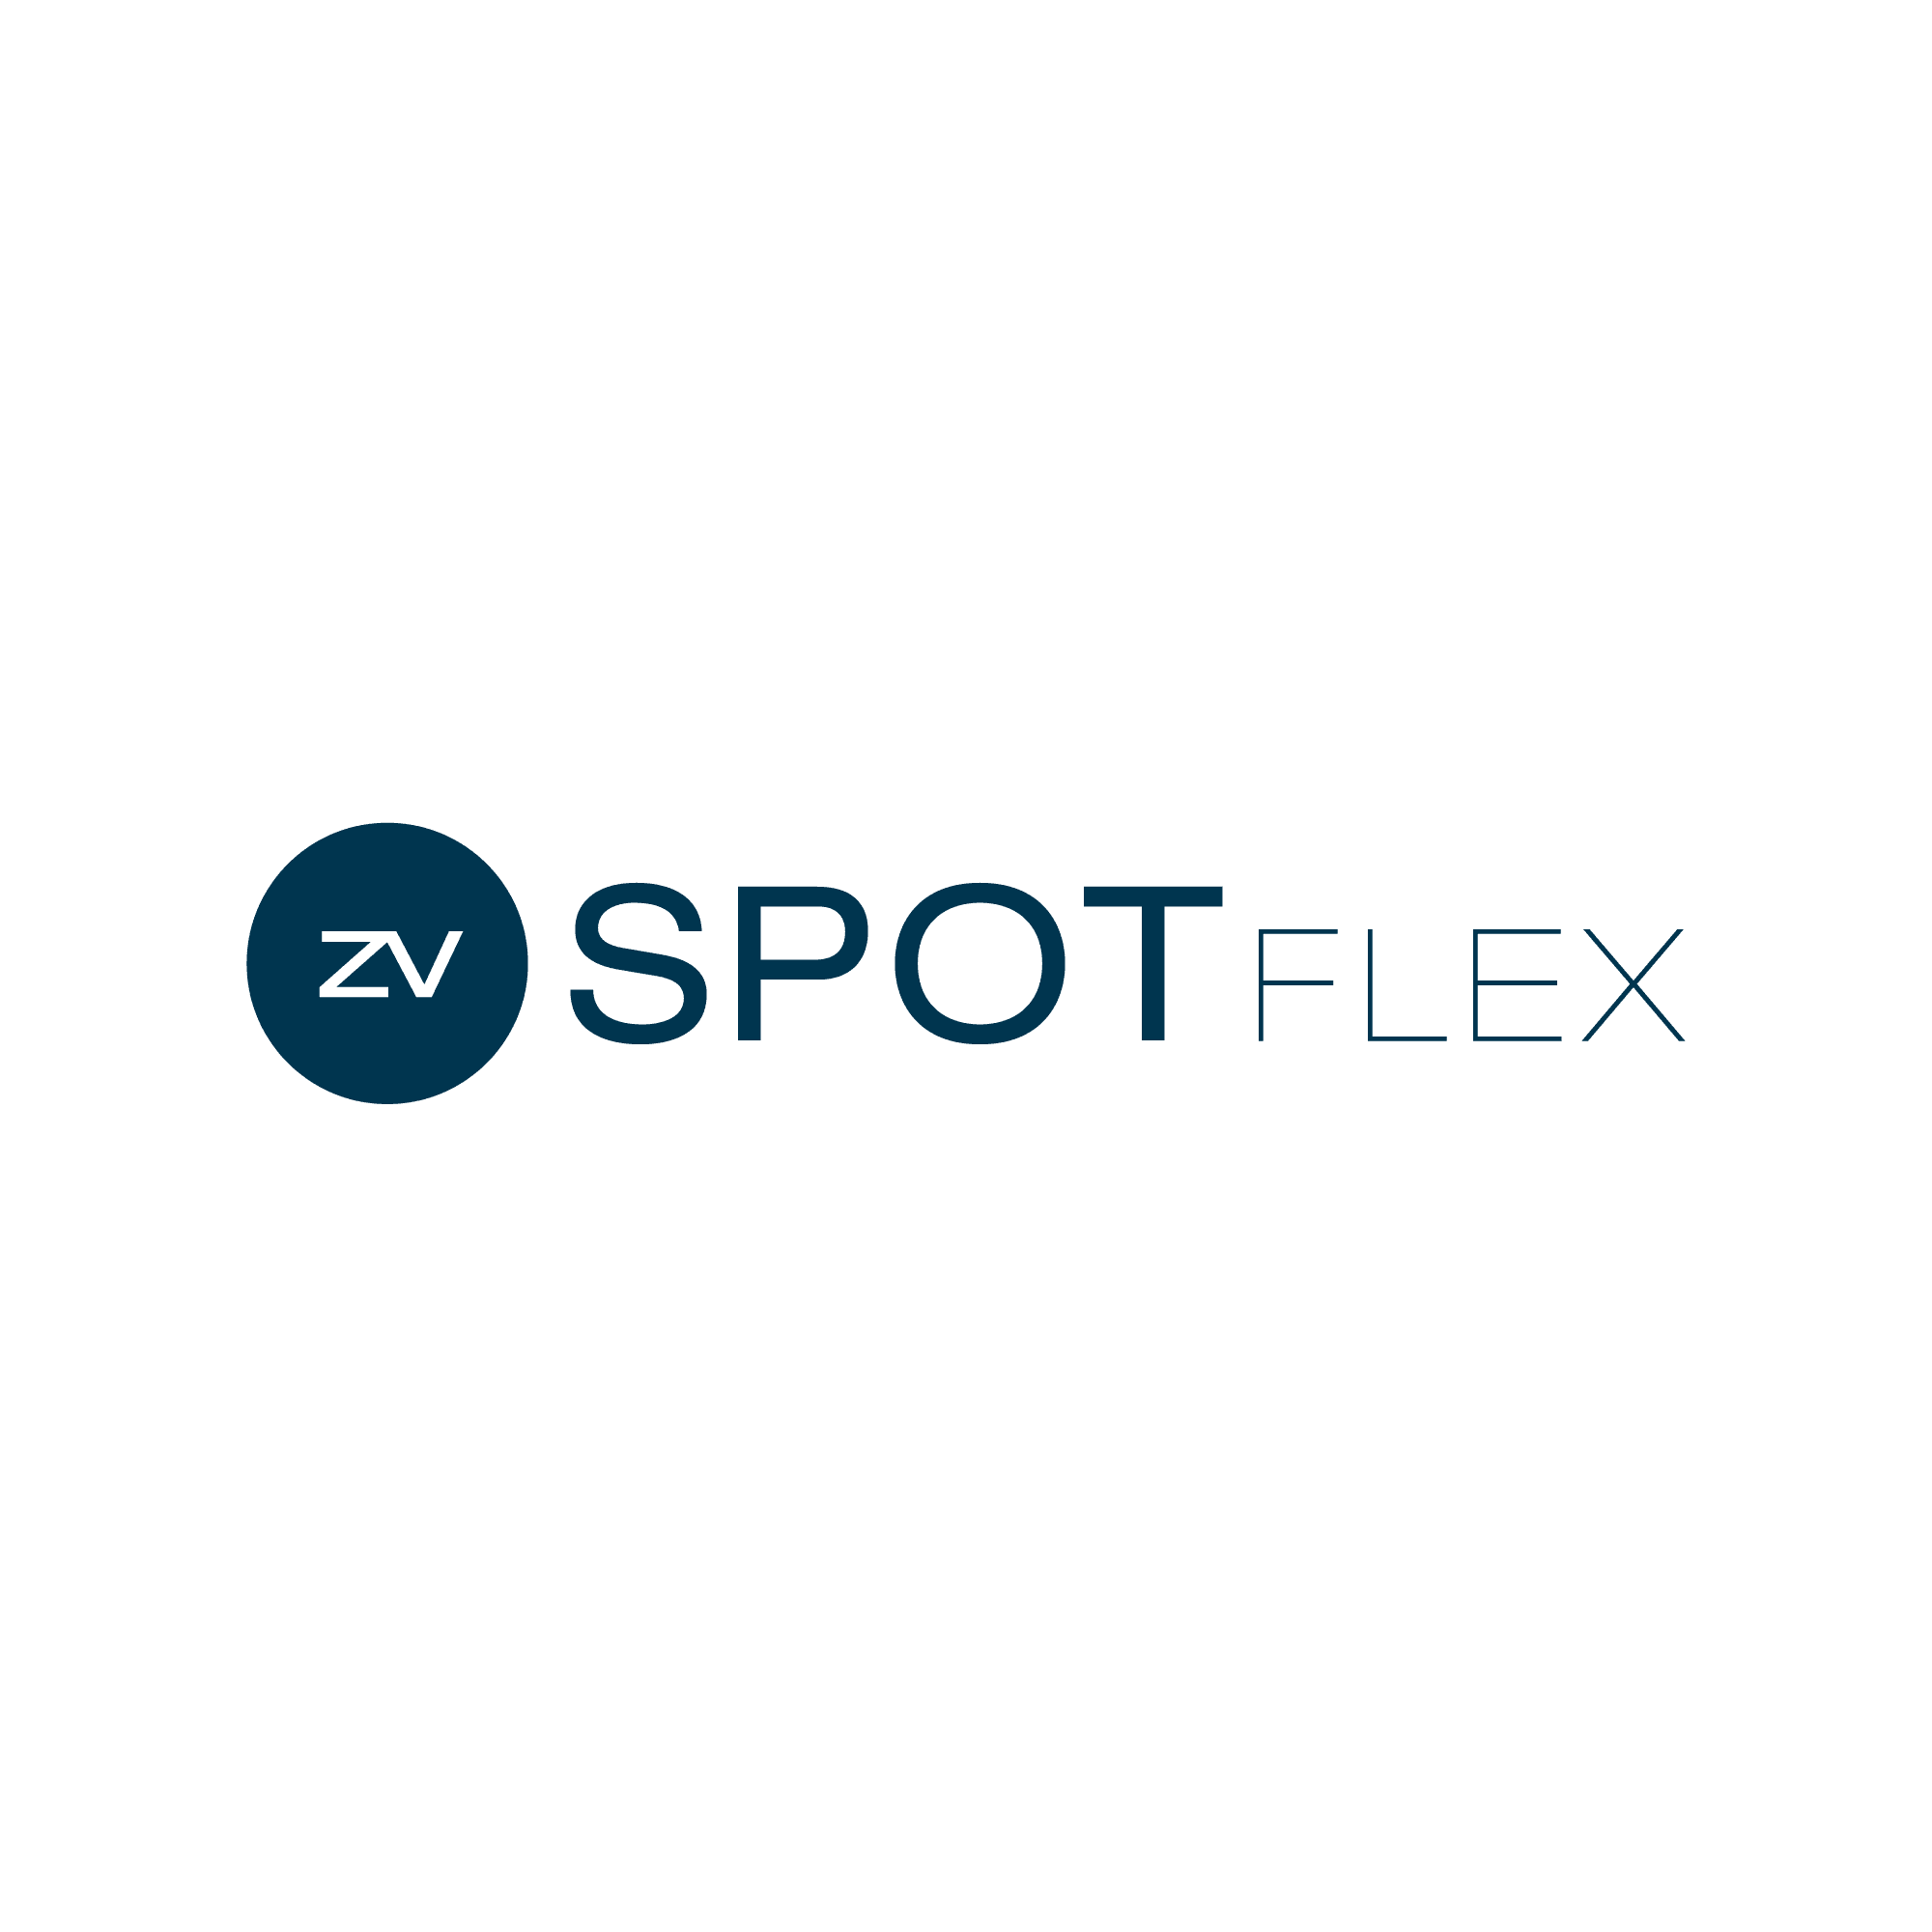 Es ist das Logo von zetVisions SPoT FLEX zu sehen.